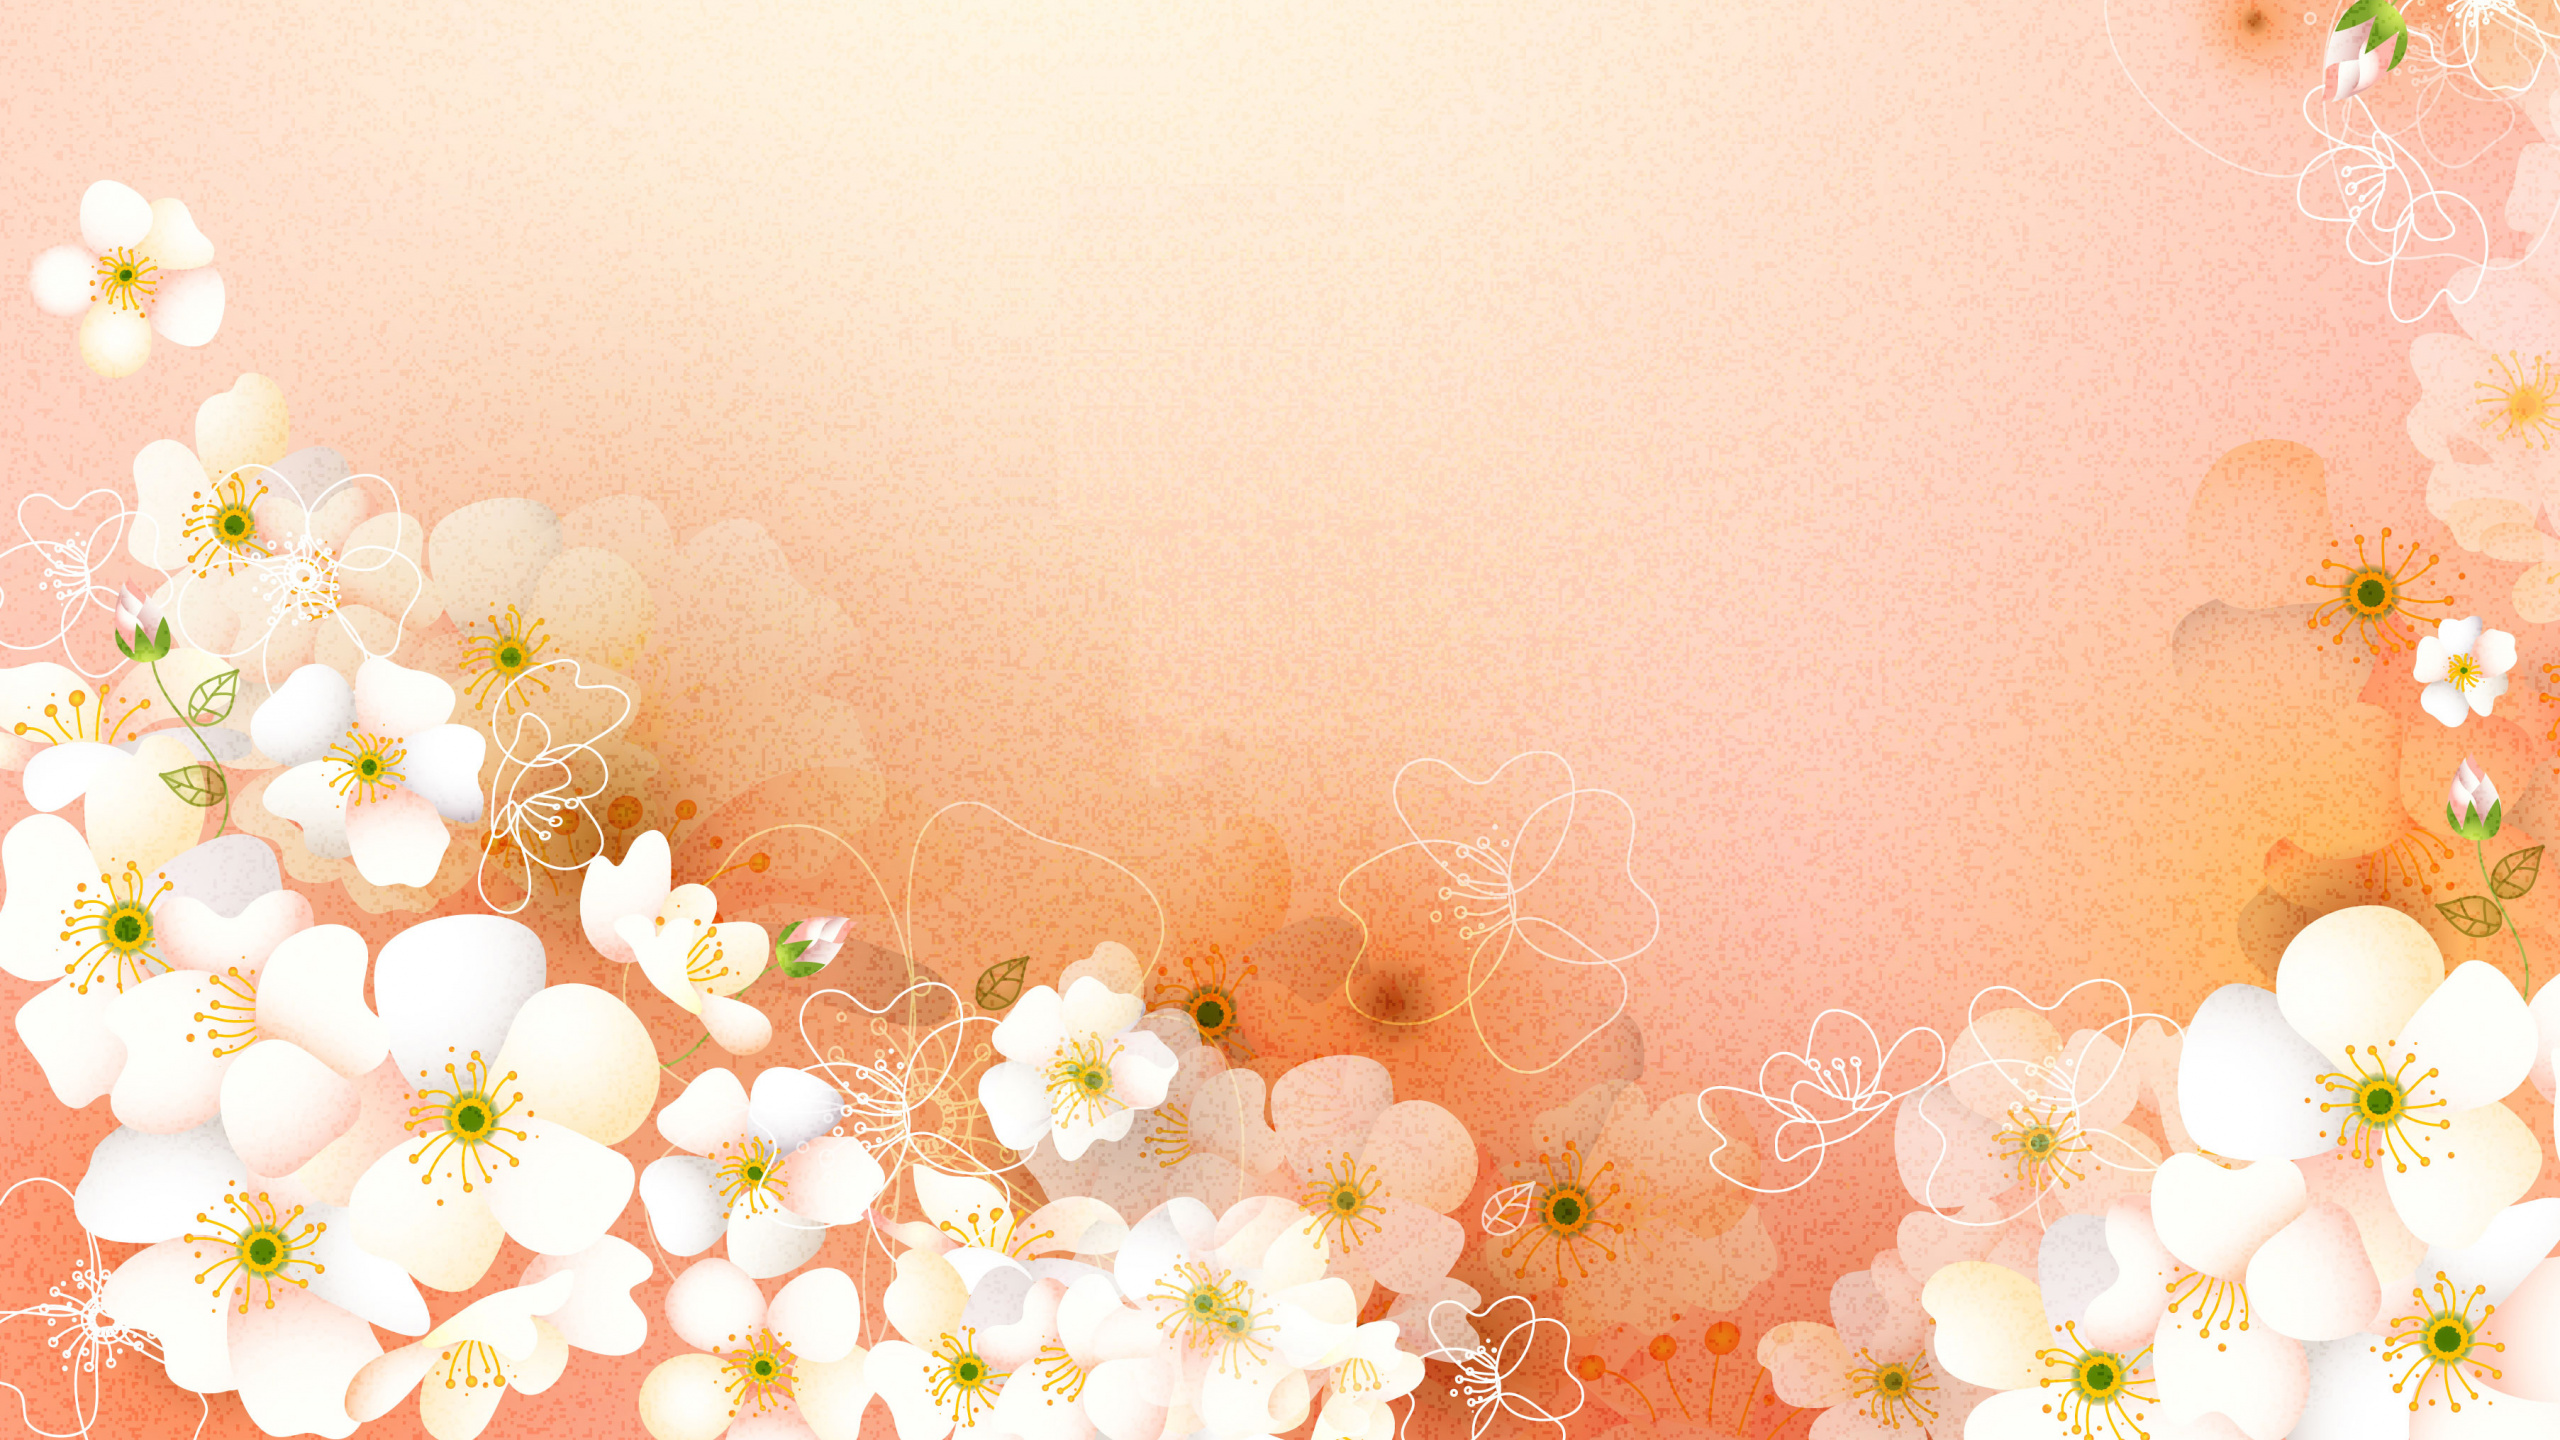 Flores Blancas y Amarillas Con Fondo Rosa. Wallpaper in 2560x1440 Resolution